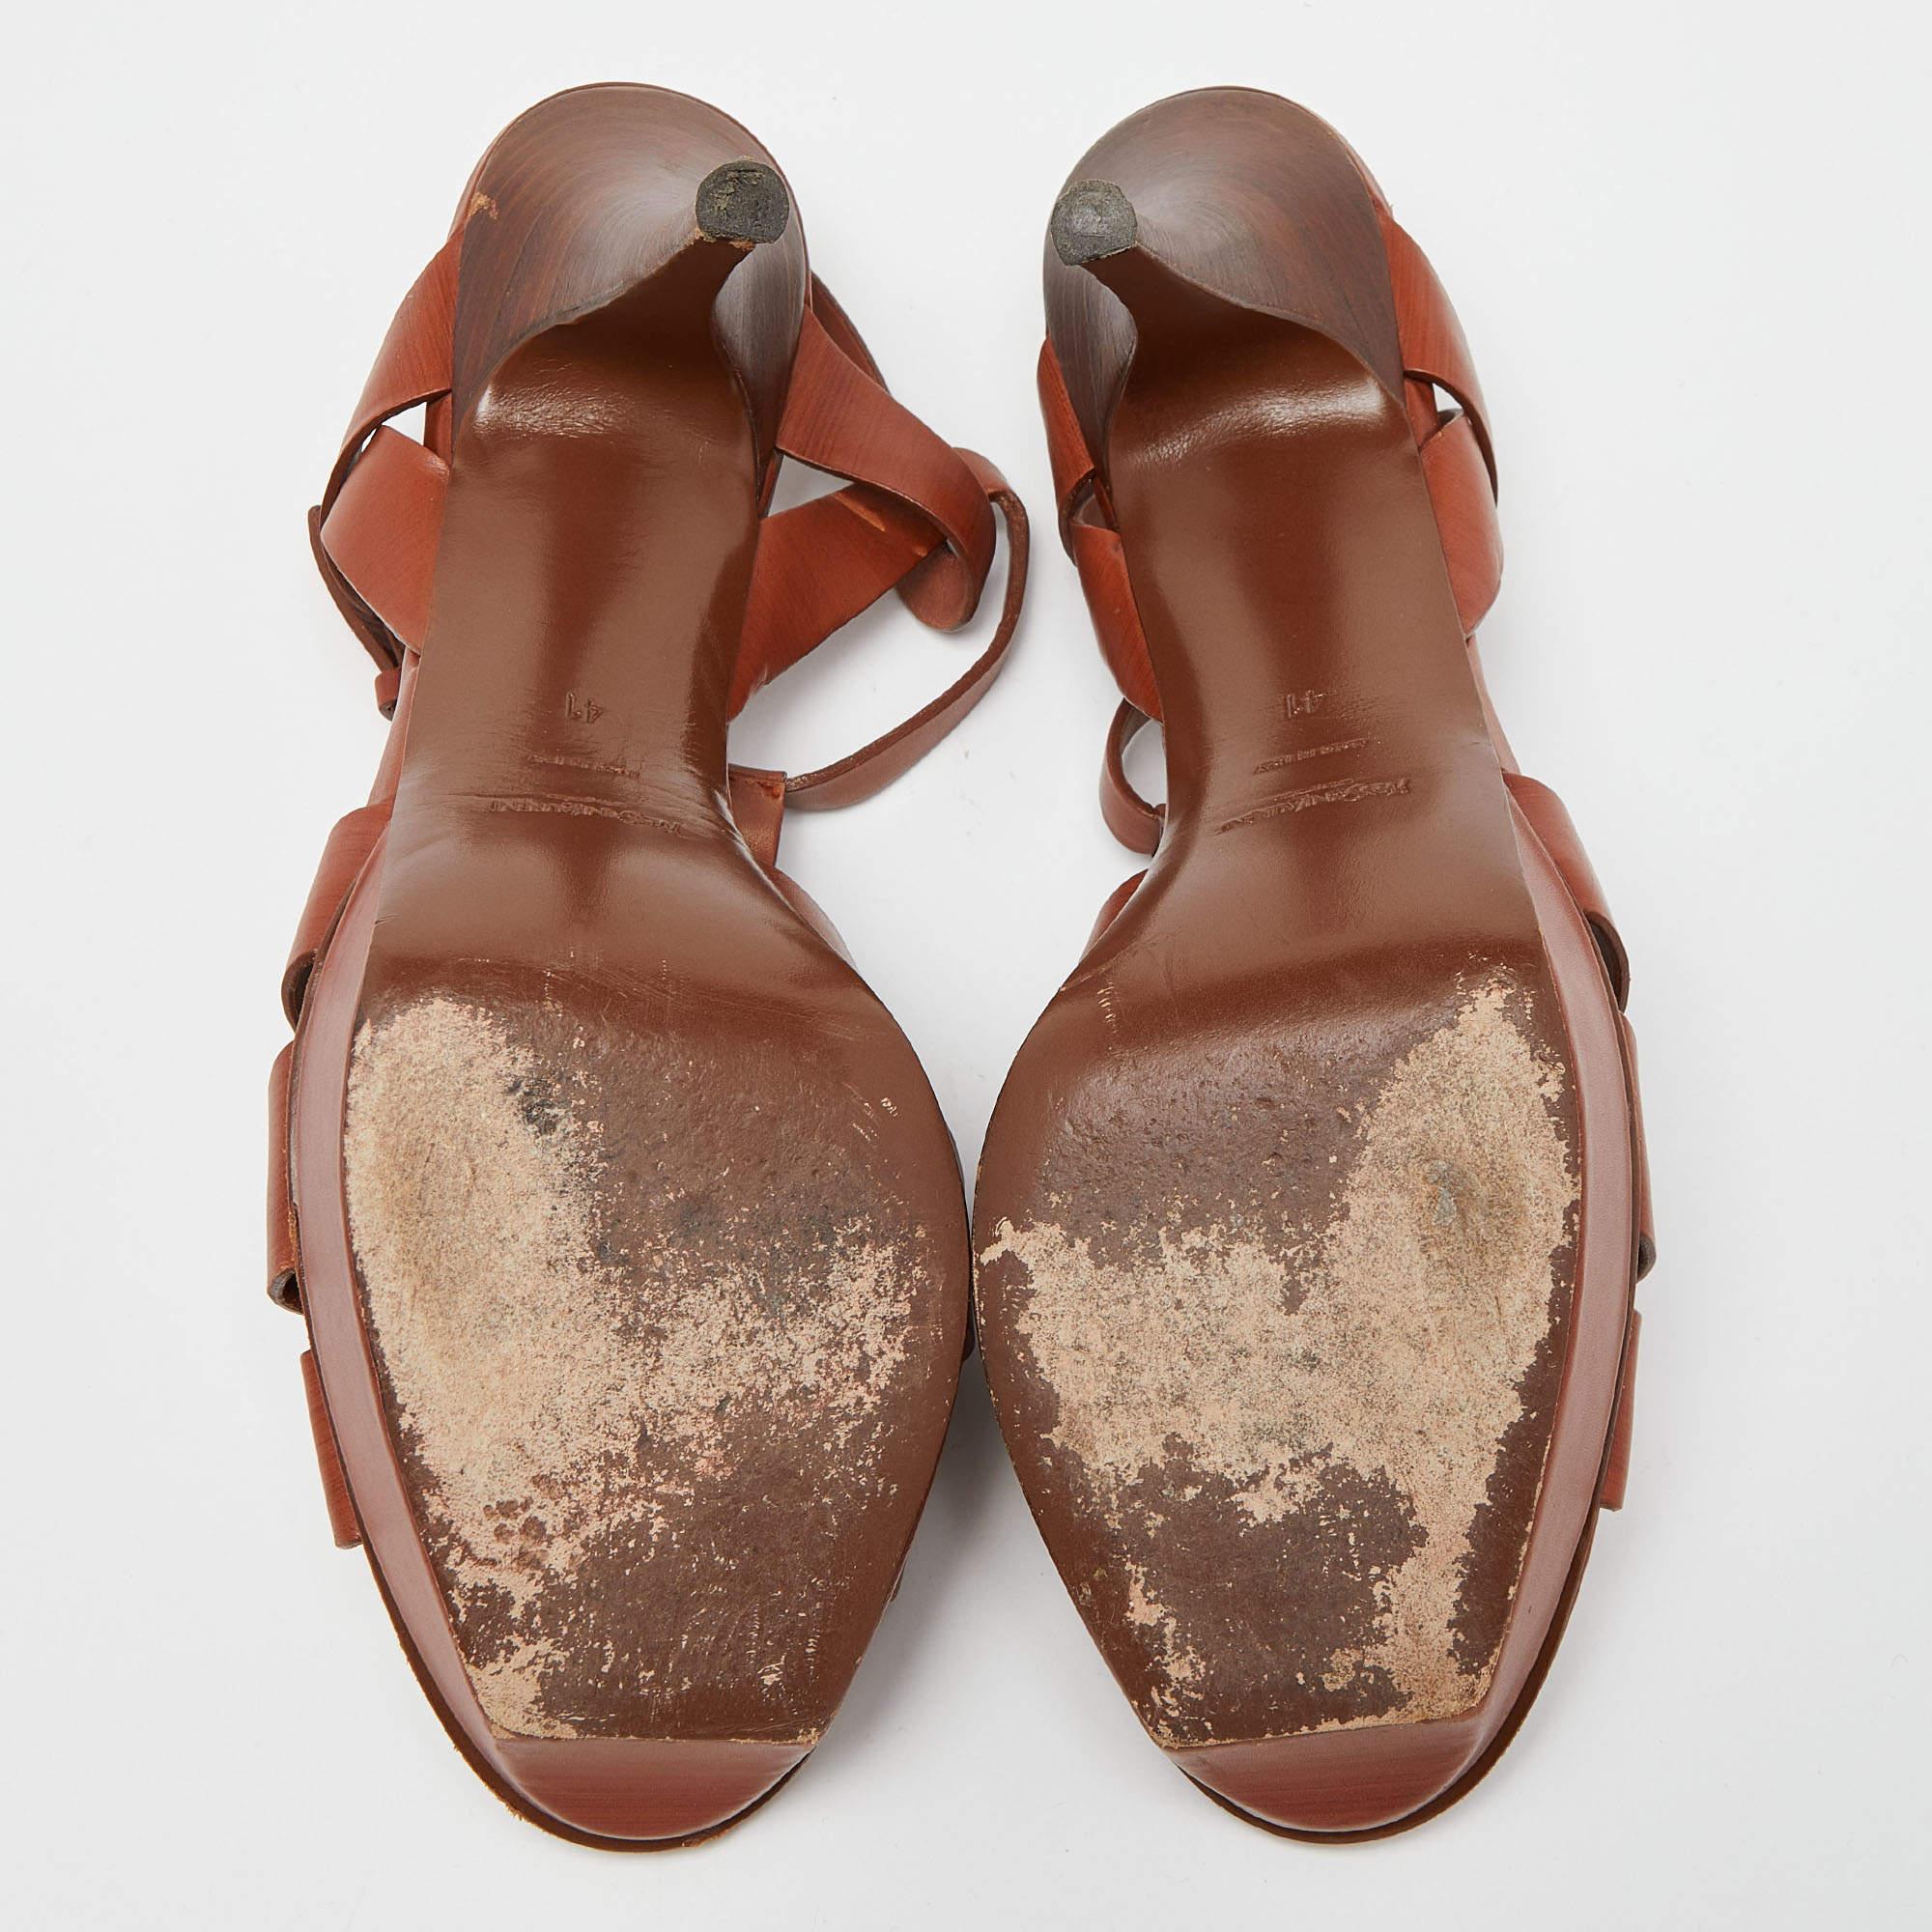 Yves Saint Laurent Tan Leather Tribute Platform Sandals Size 41 3